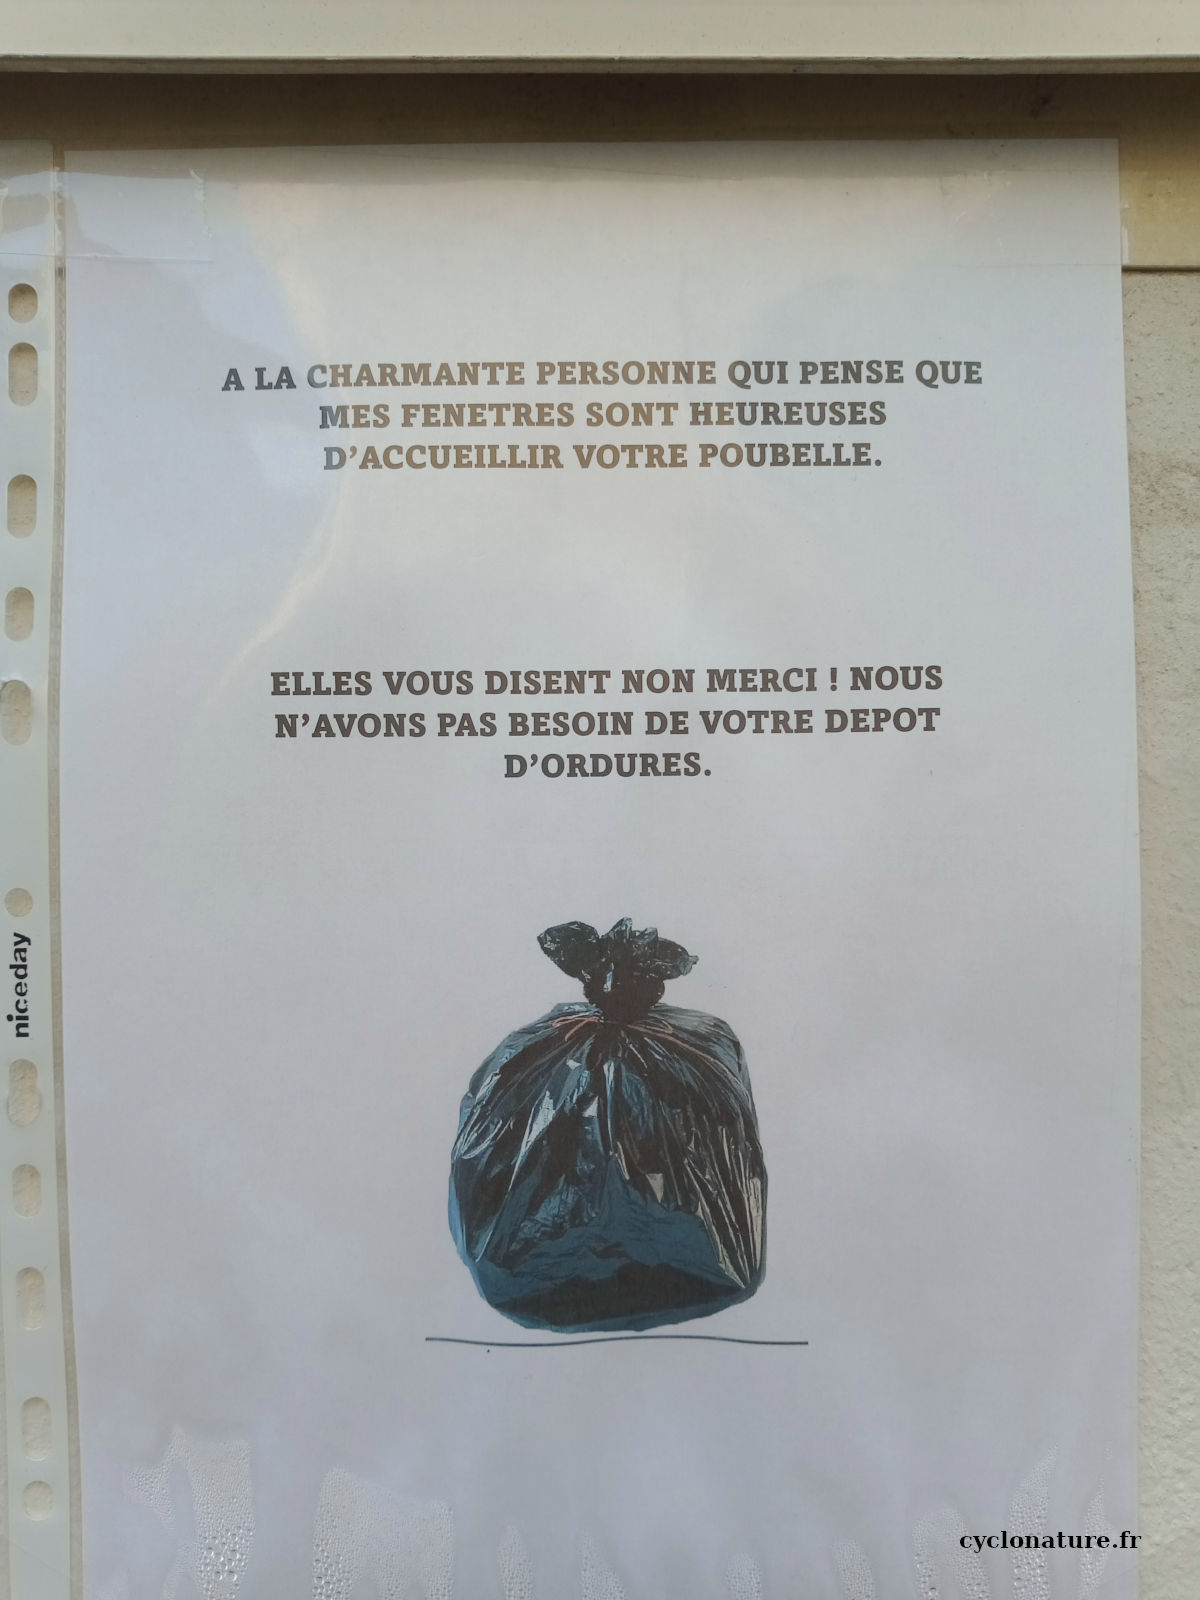 Angers: Les poubelles sous nos fenêtres non merci